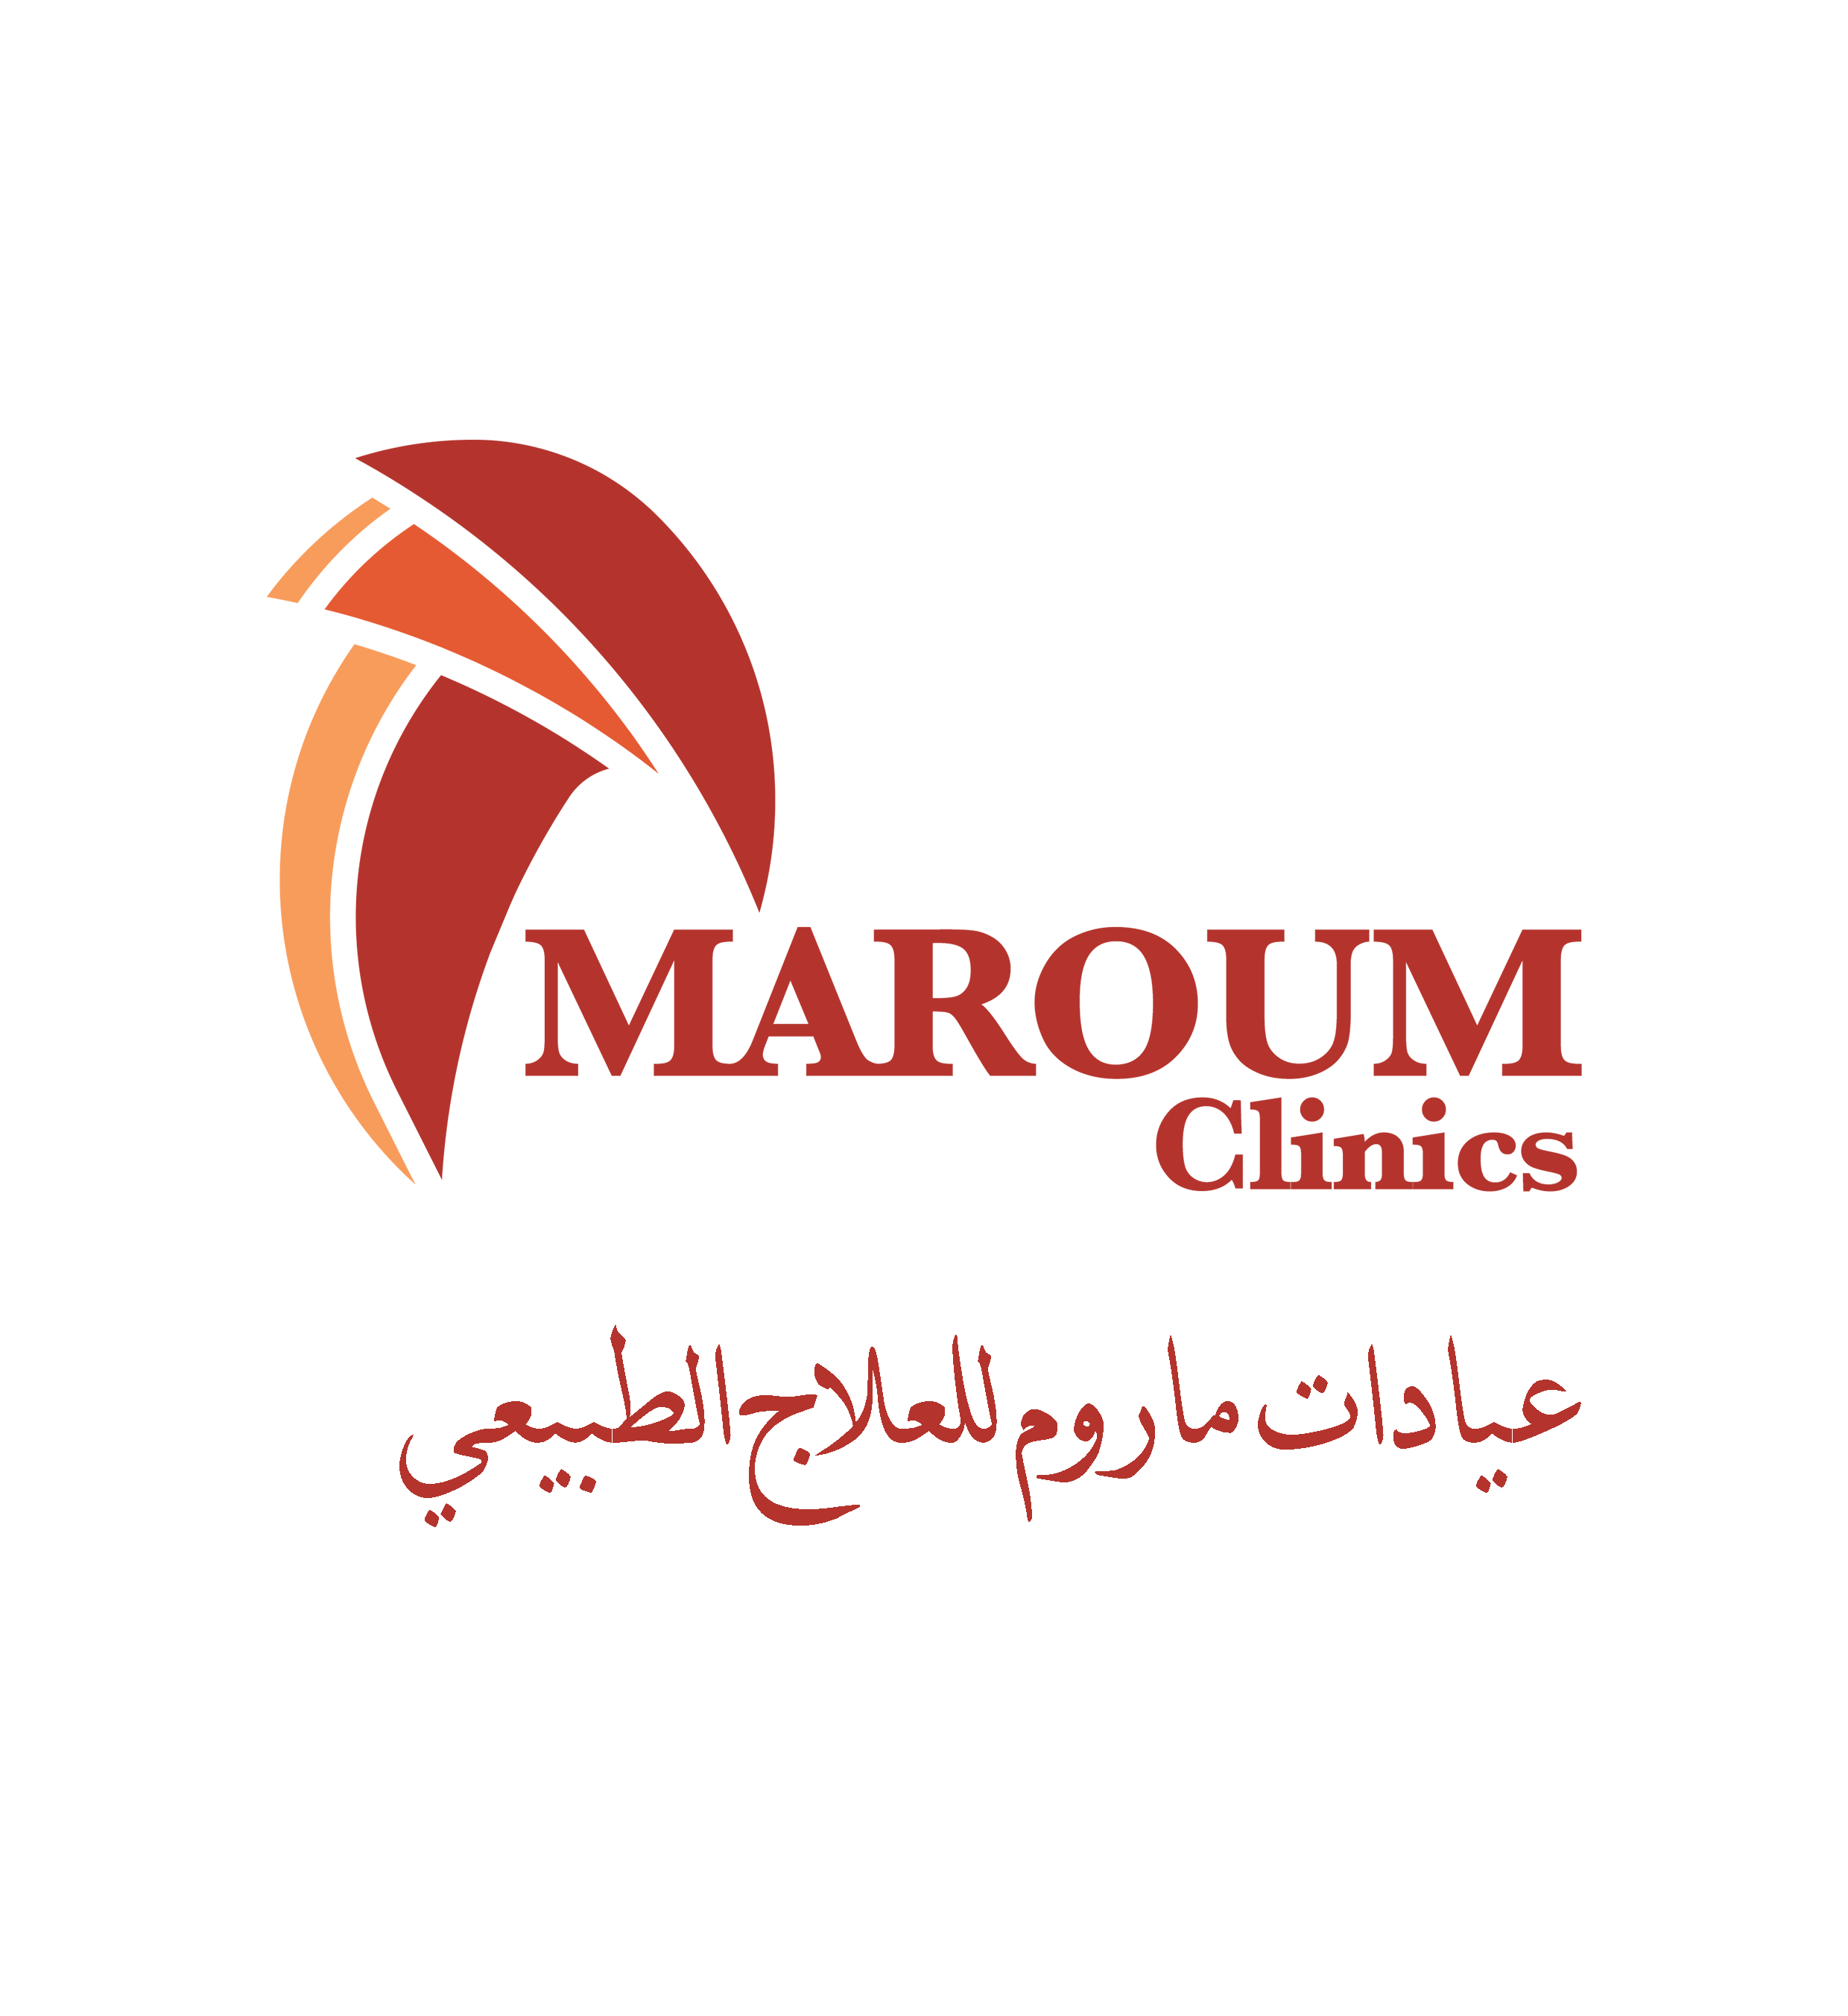 Maroum Clinics